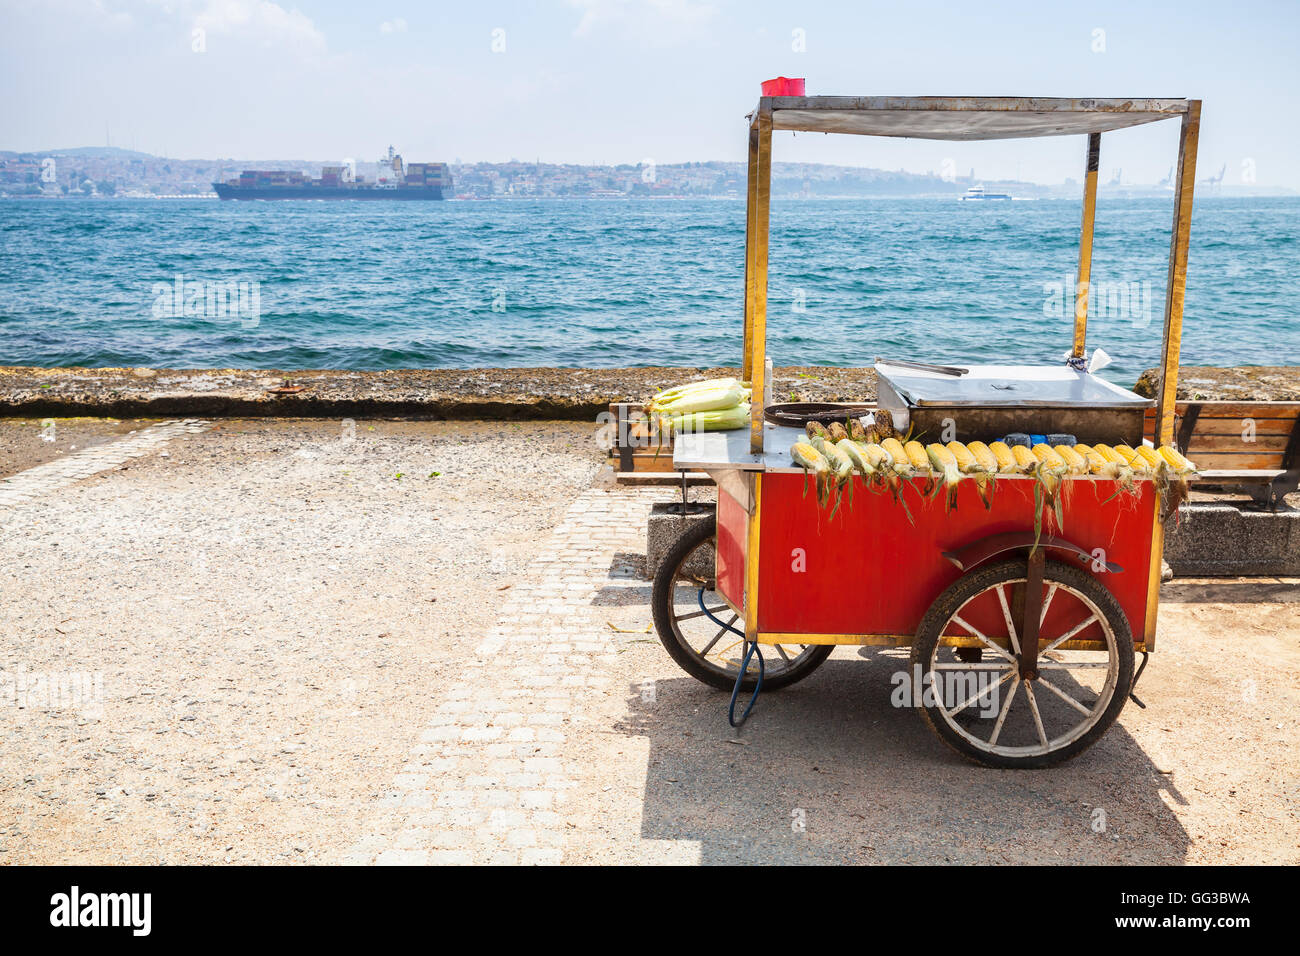 Vente rouge panier avec des maïs grillé et vide se trouve sur la côte de Bosphore. Istanbul, Turquie Banque D'Images